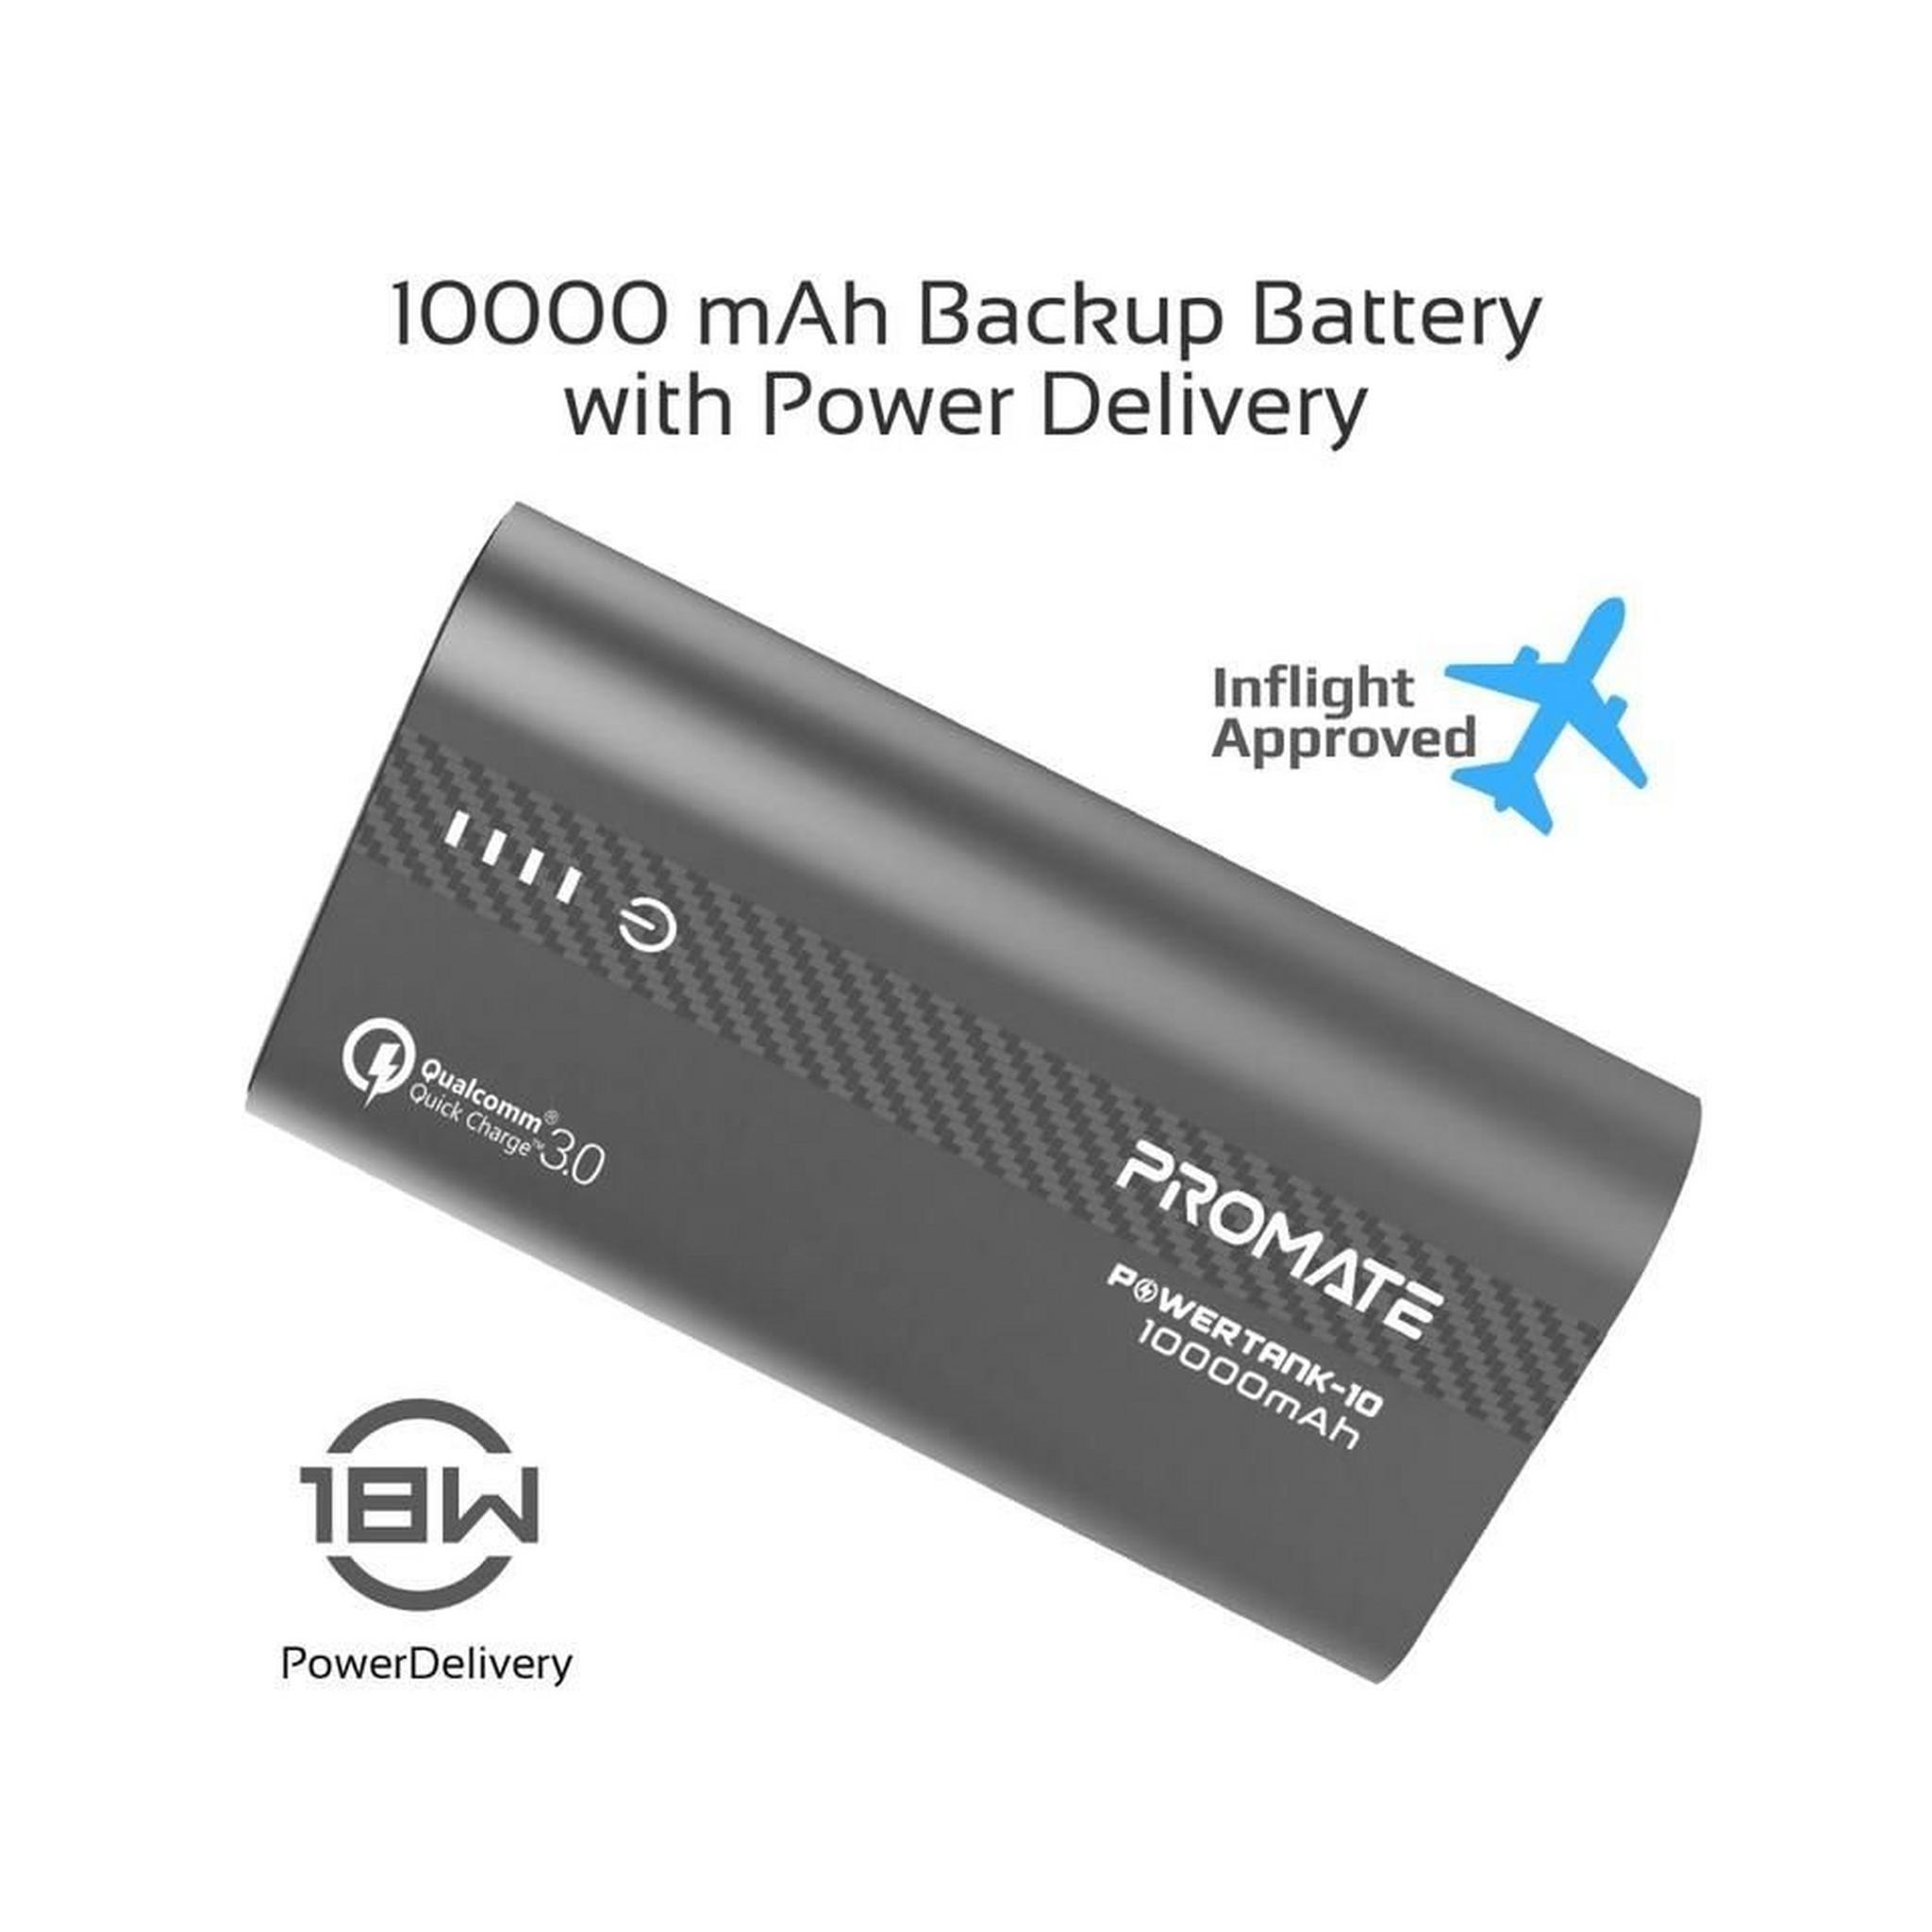 Promate 10000mAh Ultra-Fast Powerbank (PowerTank-10) - Grey